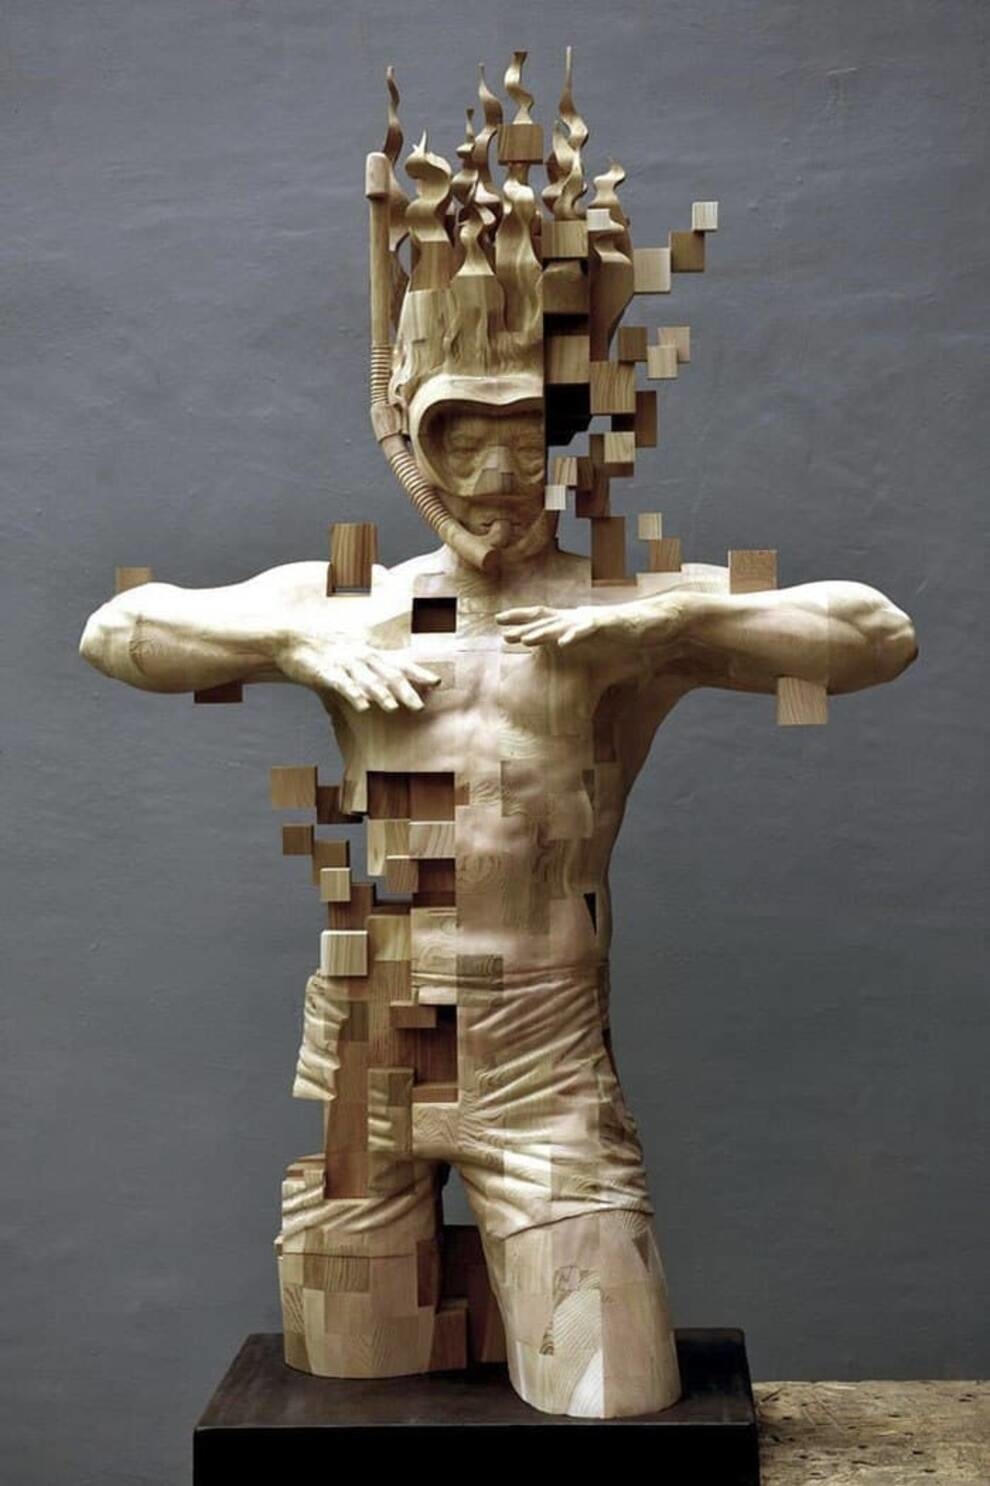 Пиксели как искусство: резчик по дереву из Тайвани использует необычную технику создания скульптур